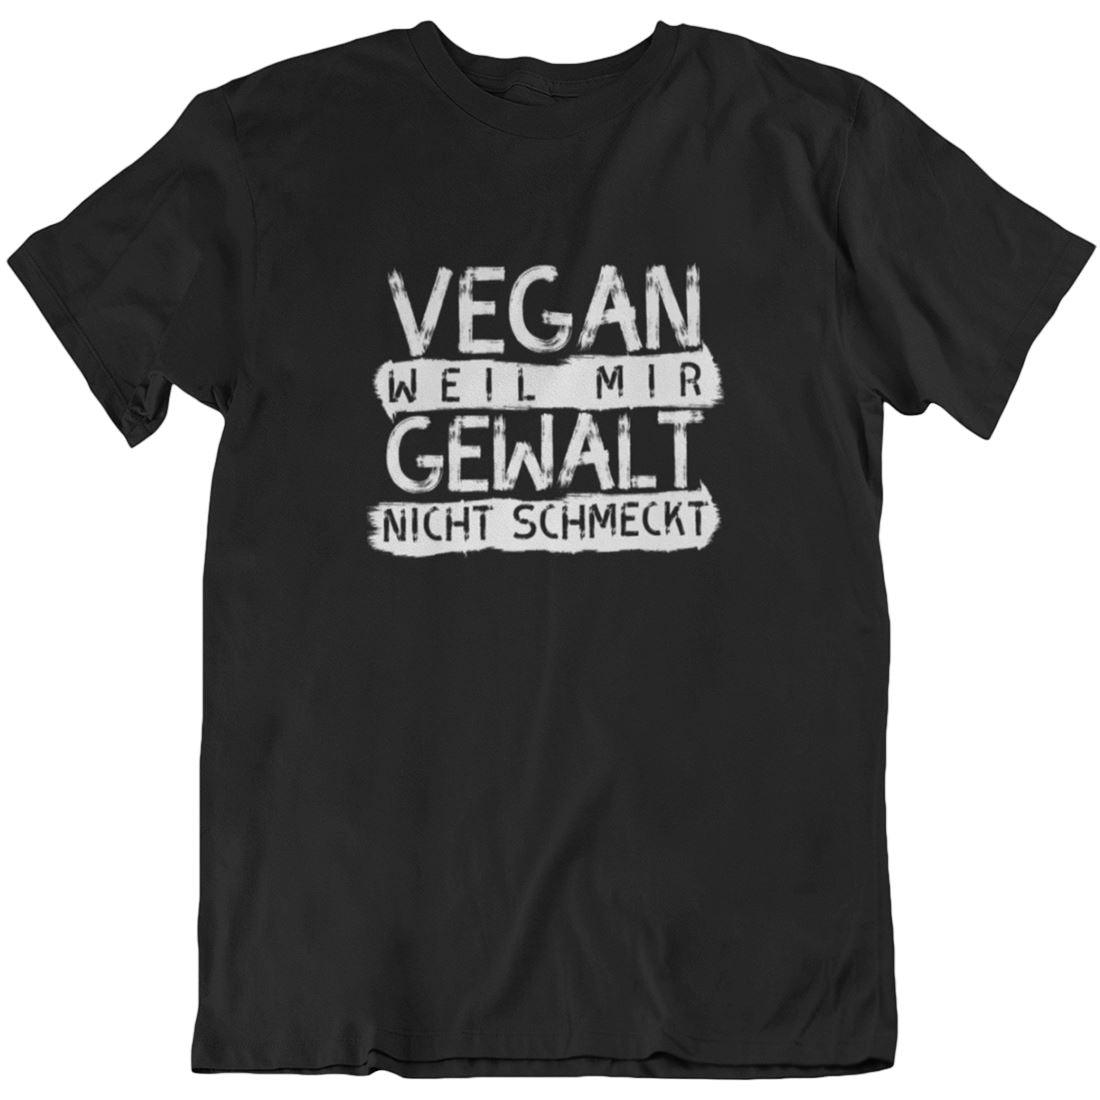 Vegan weil mir Gewalt nicht schmeckt - Unisex Organic Shirt Rocker T-Shirt ST/ST Shirtee Schwarz S 